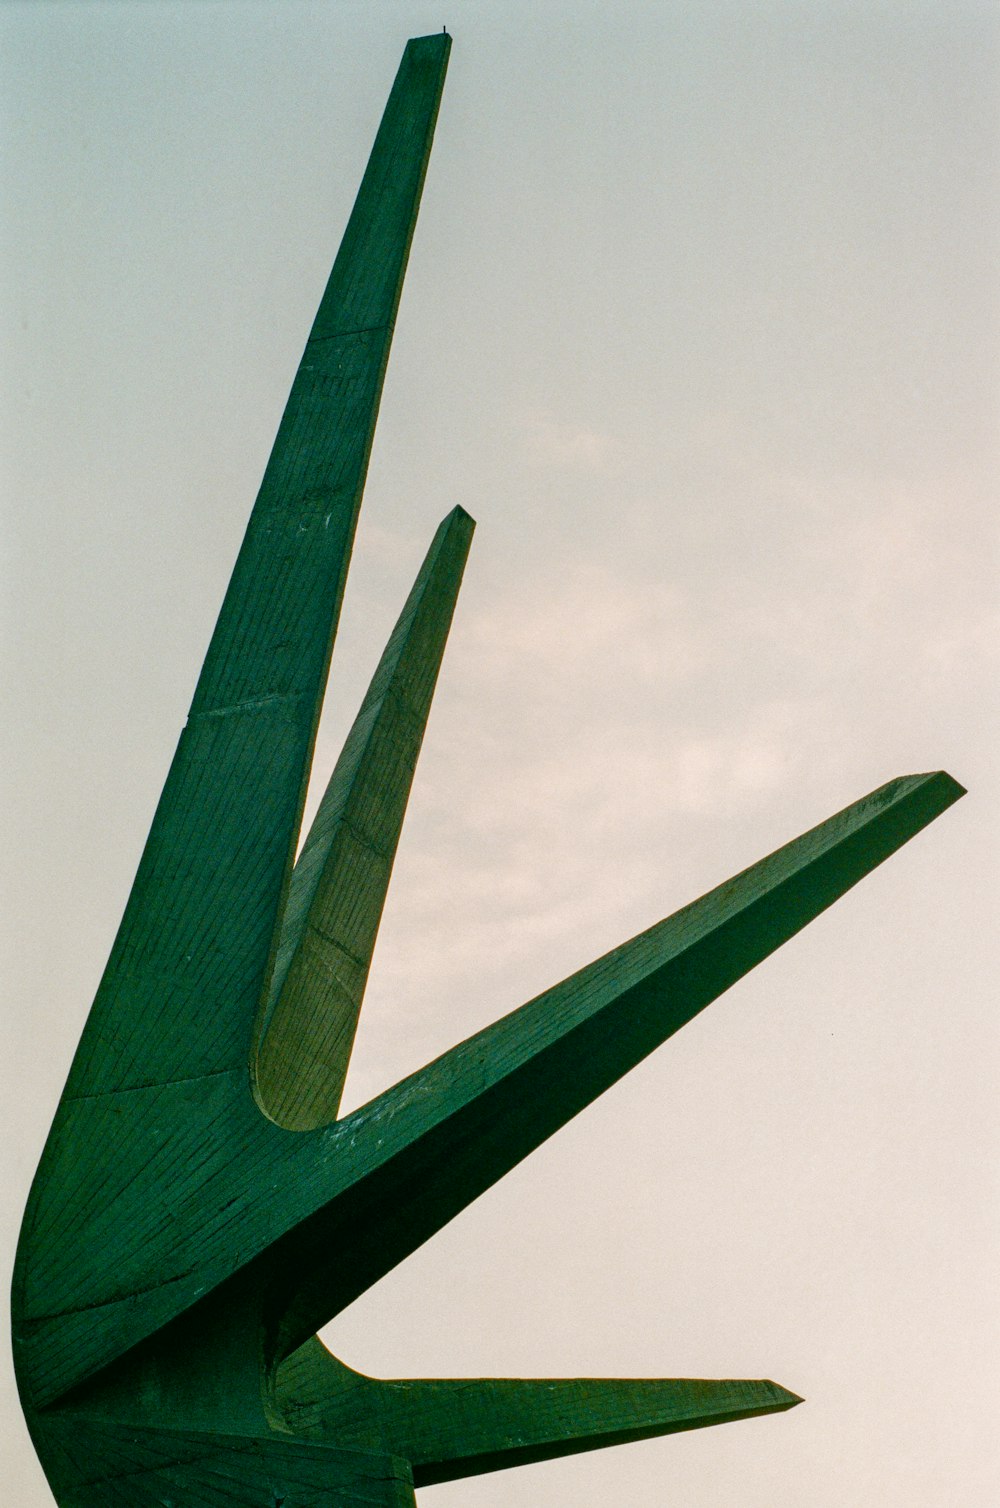 a sculpture of a bird made of wood